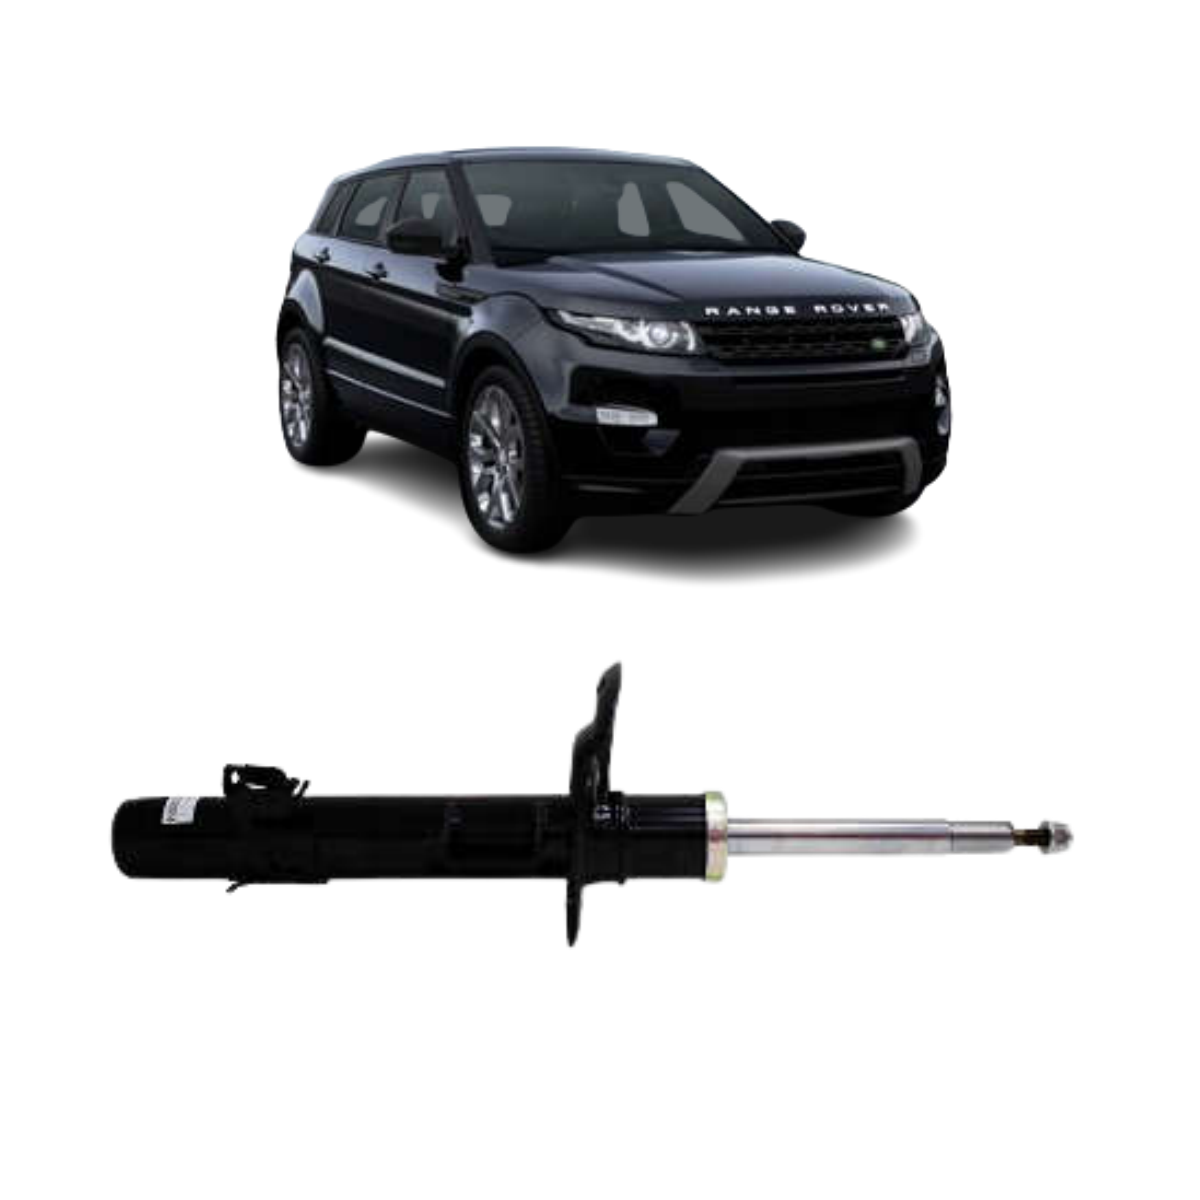 Amortecedor Land Rover Discovery Sport Todos 01/2014 Ate 12/2019 Frontal Estrutural Lado Esquerdo Kyb 3358017